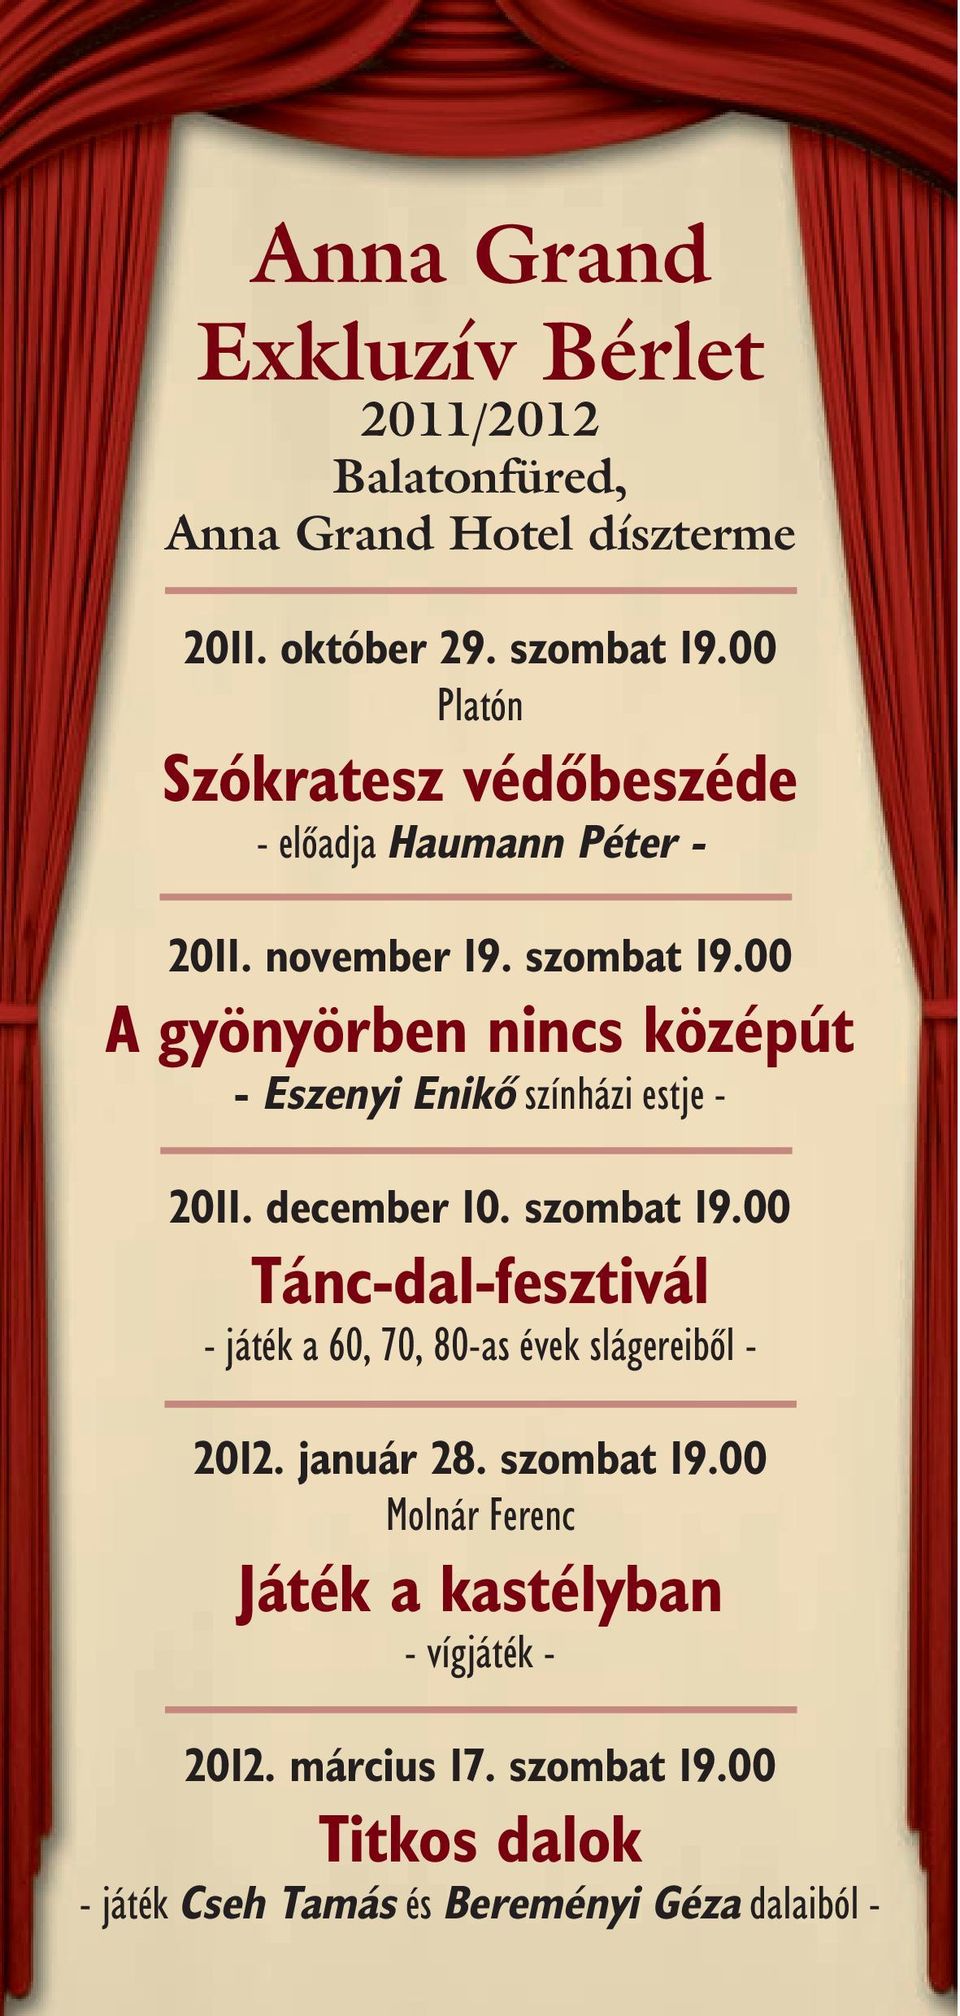 00 A gyönyörben nincs középút - Eszenyi Enikõ színházi estje - 2011. december 10. szombat 19.